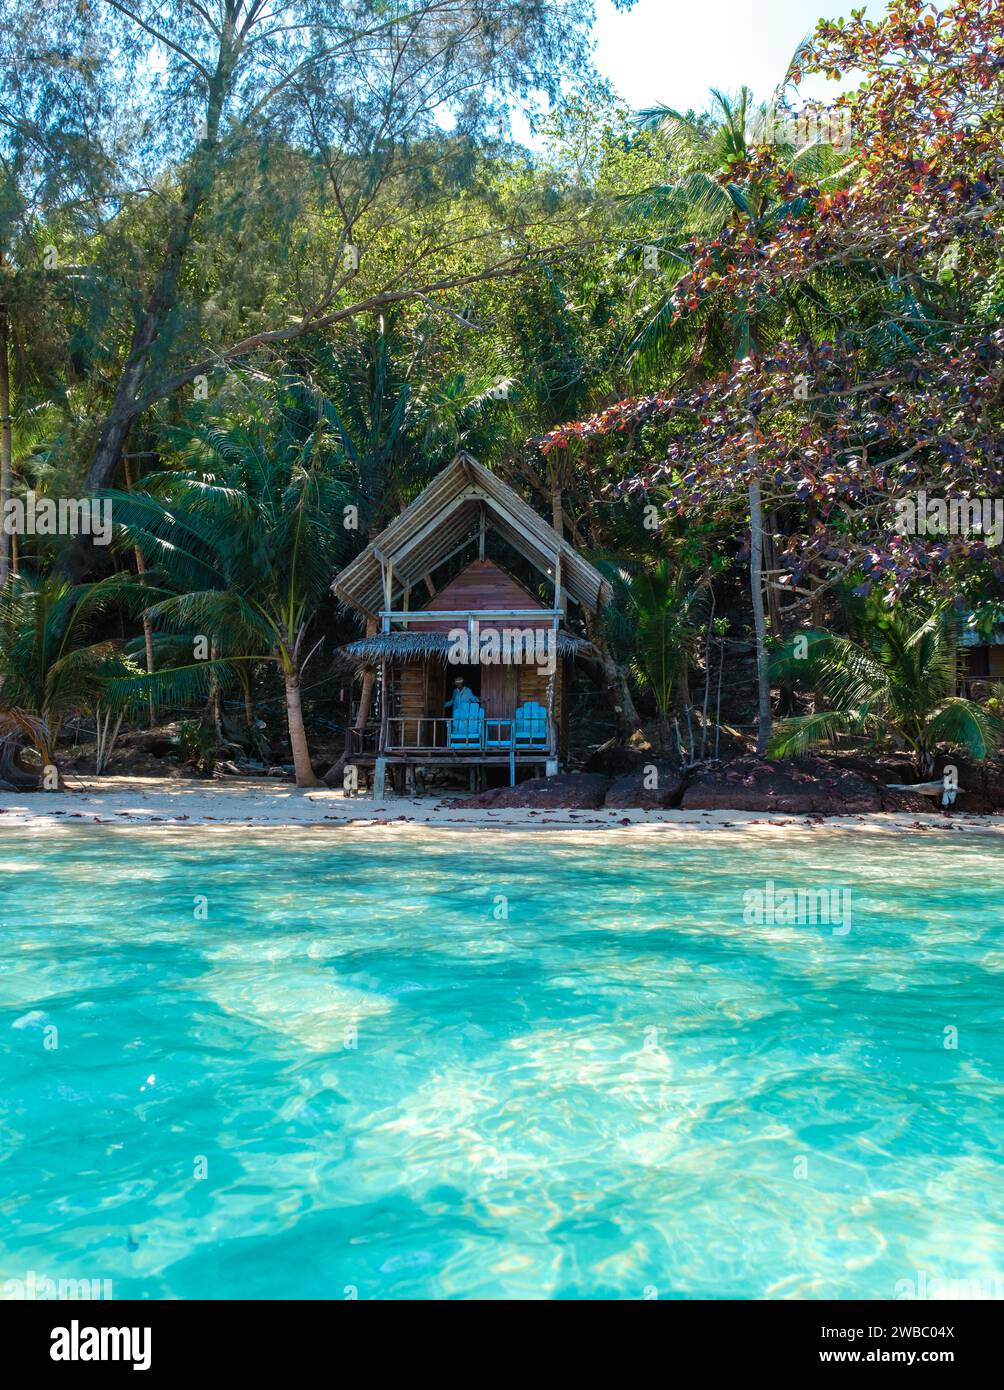 Koh Wai Island Trat Thailand è un'isola tropicale nei pressi di Koh Chang. bungalow in legno di bamboo sulla spiaggia in una giornata di sole Foto Stock